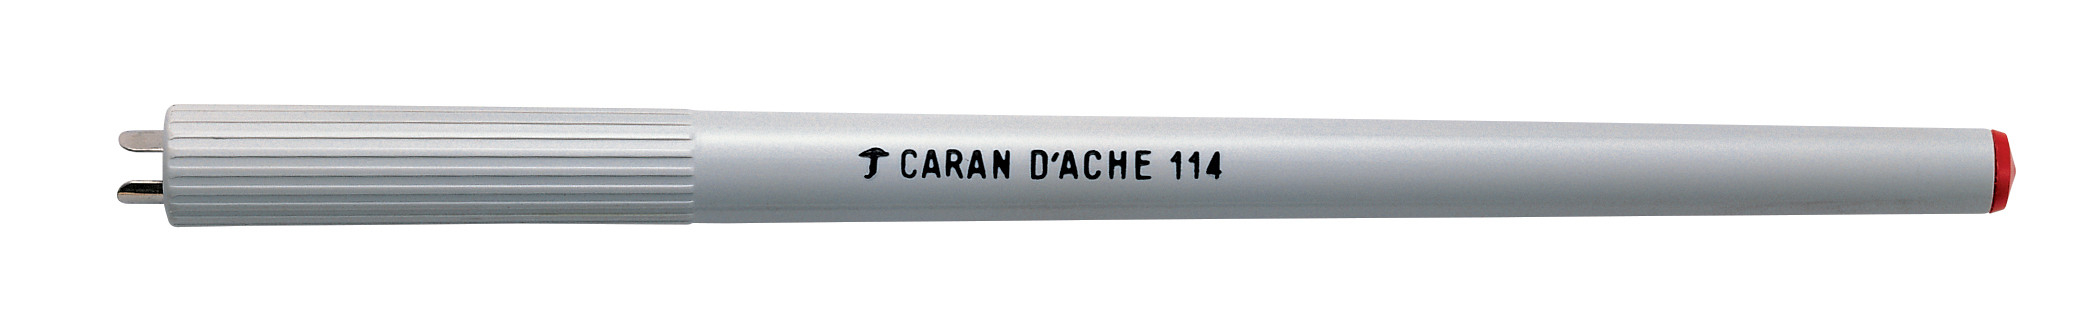 CARAN D'ACHE Federhalter 114.000 grau PVC